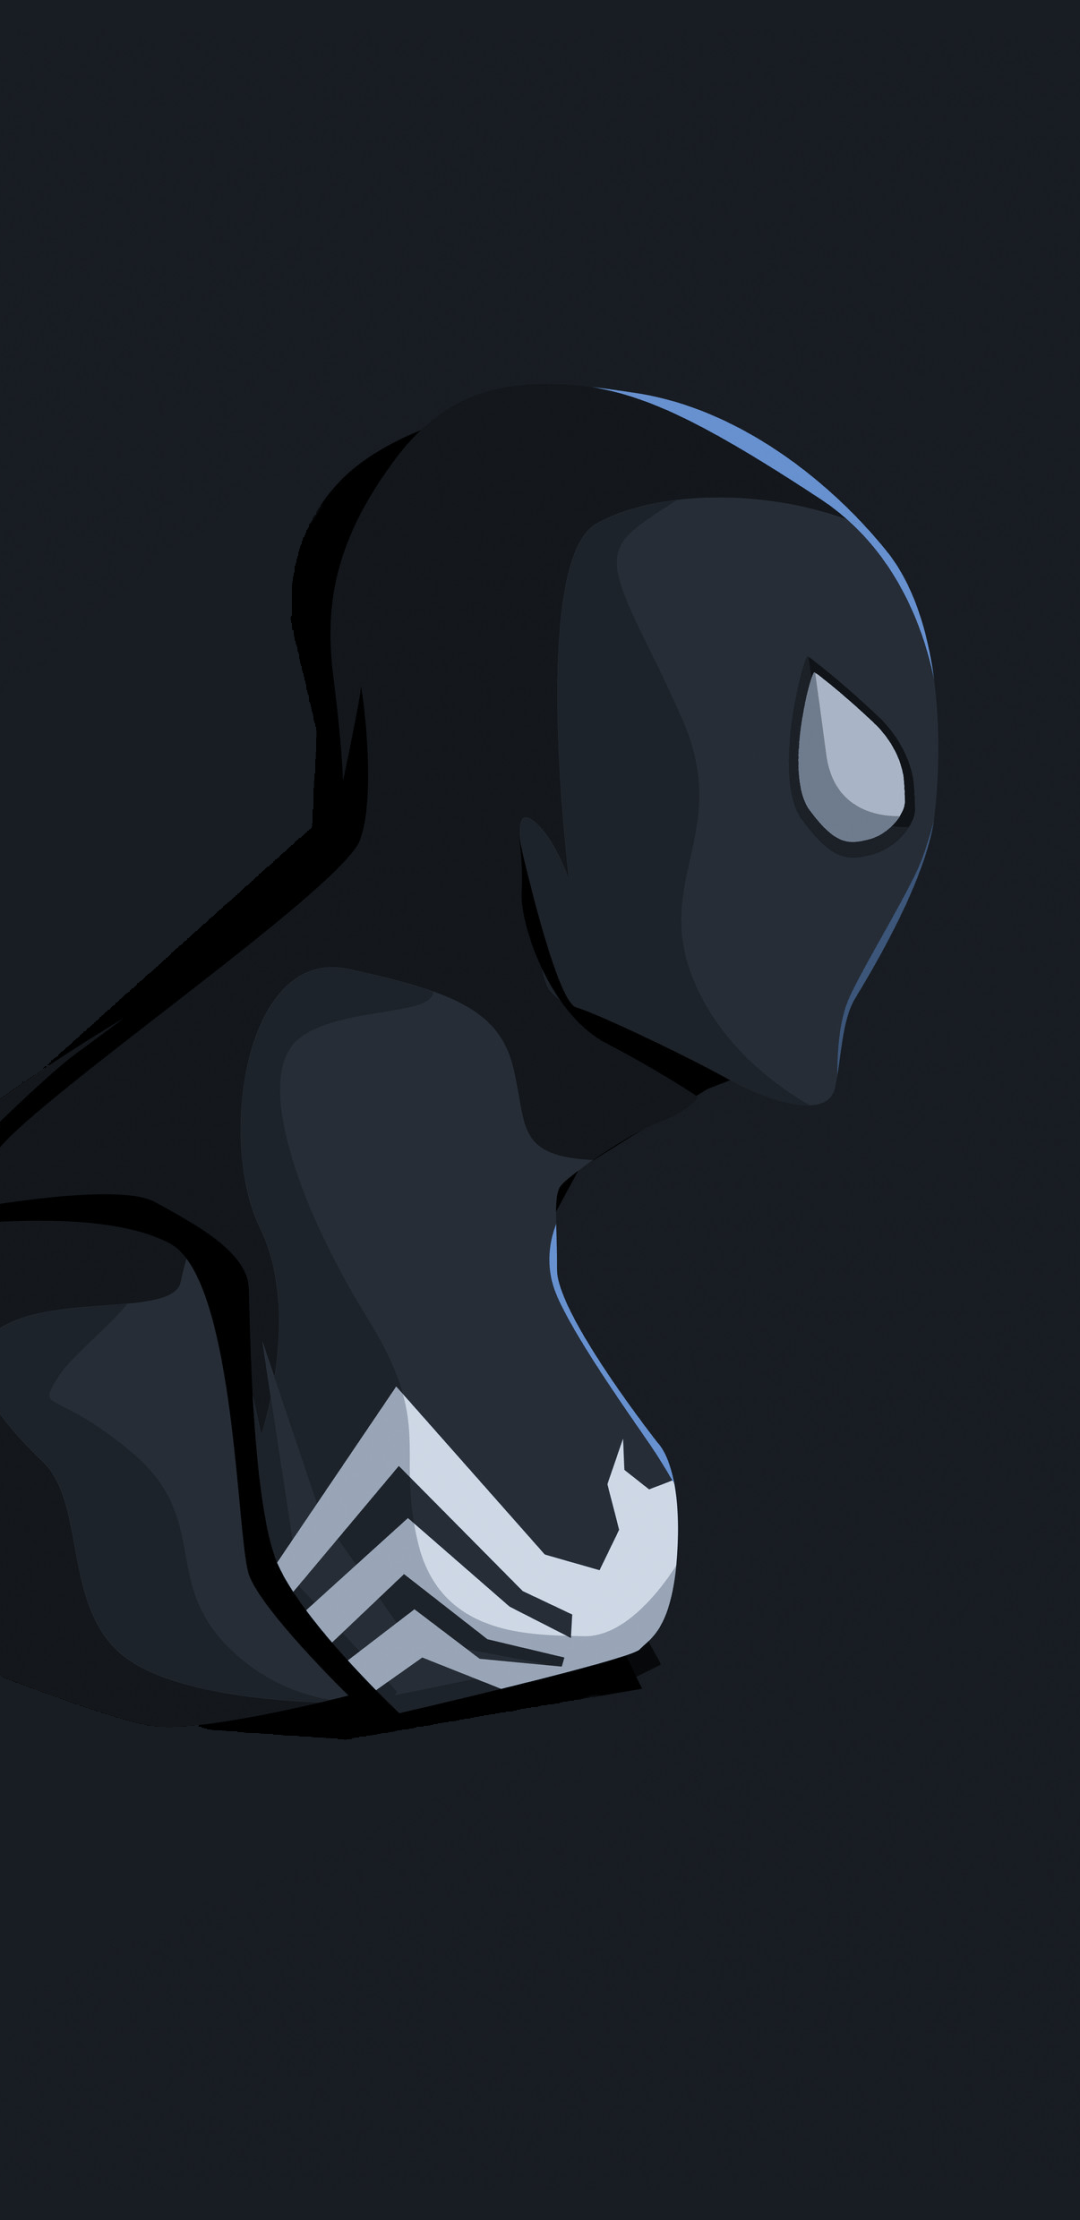 Comics Spider Man (1080x2220) Wallpaper